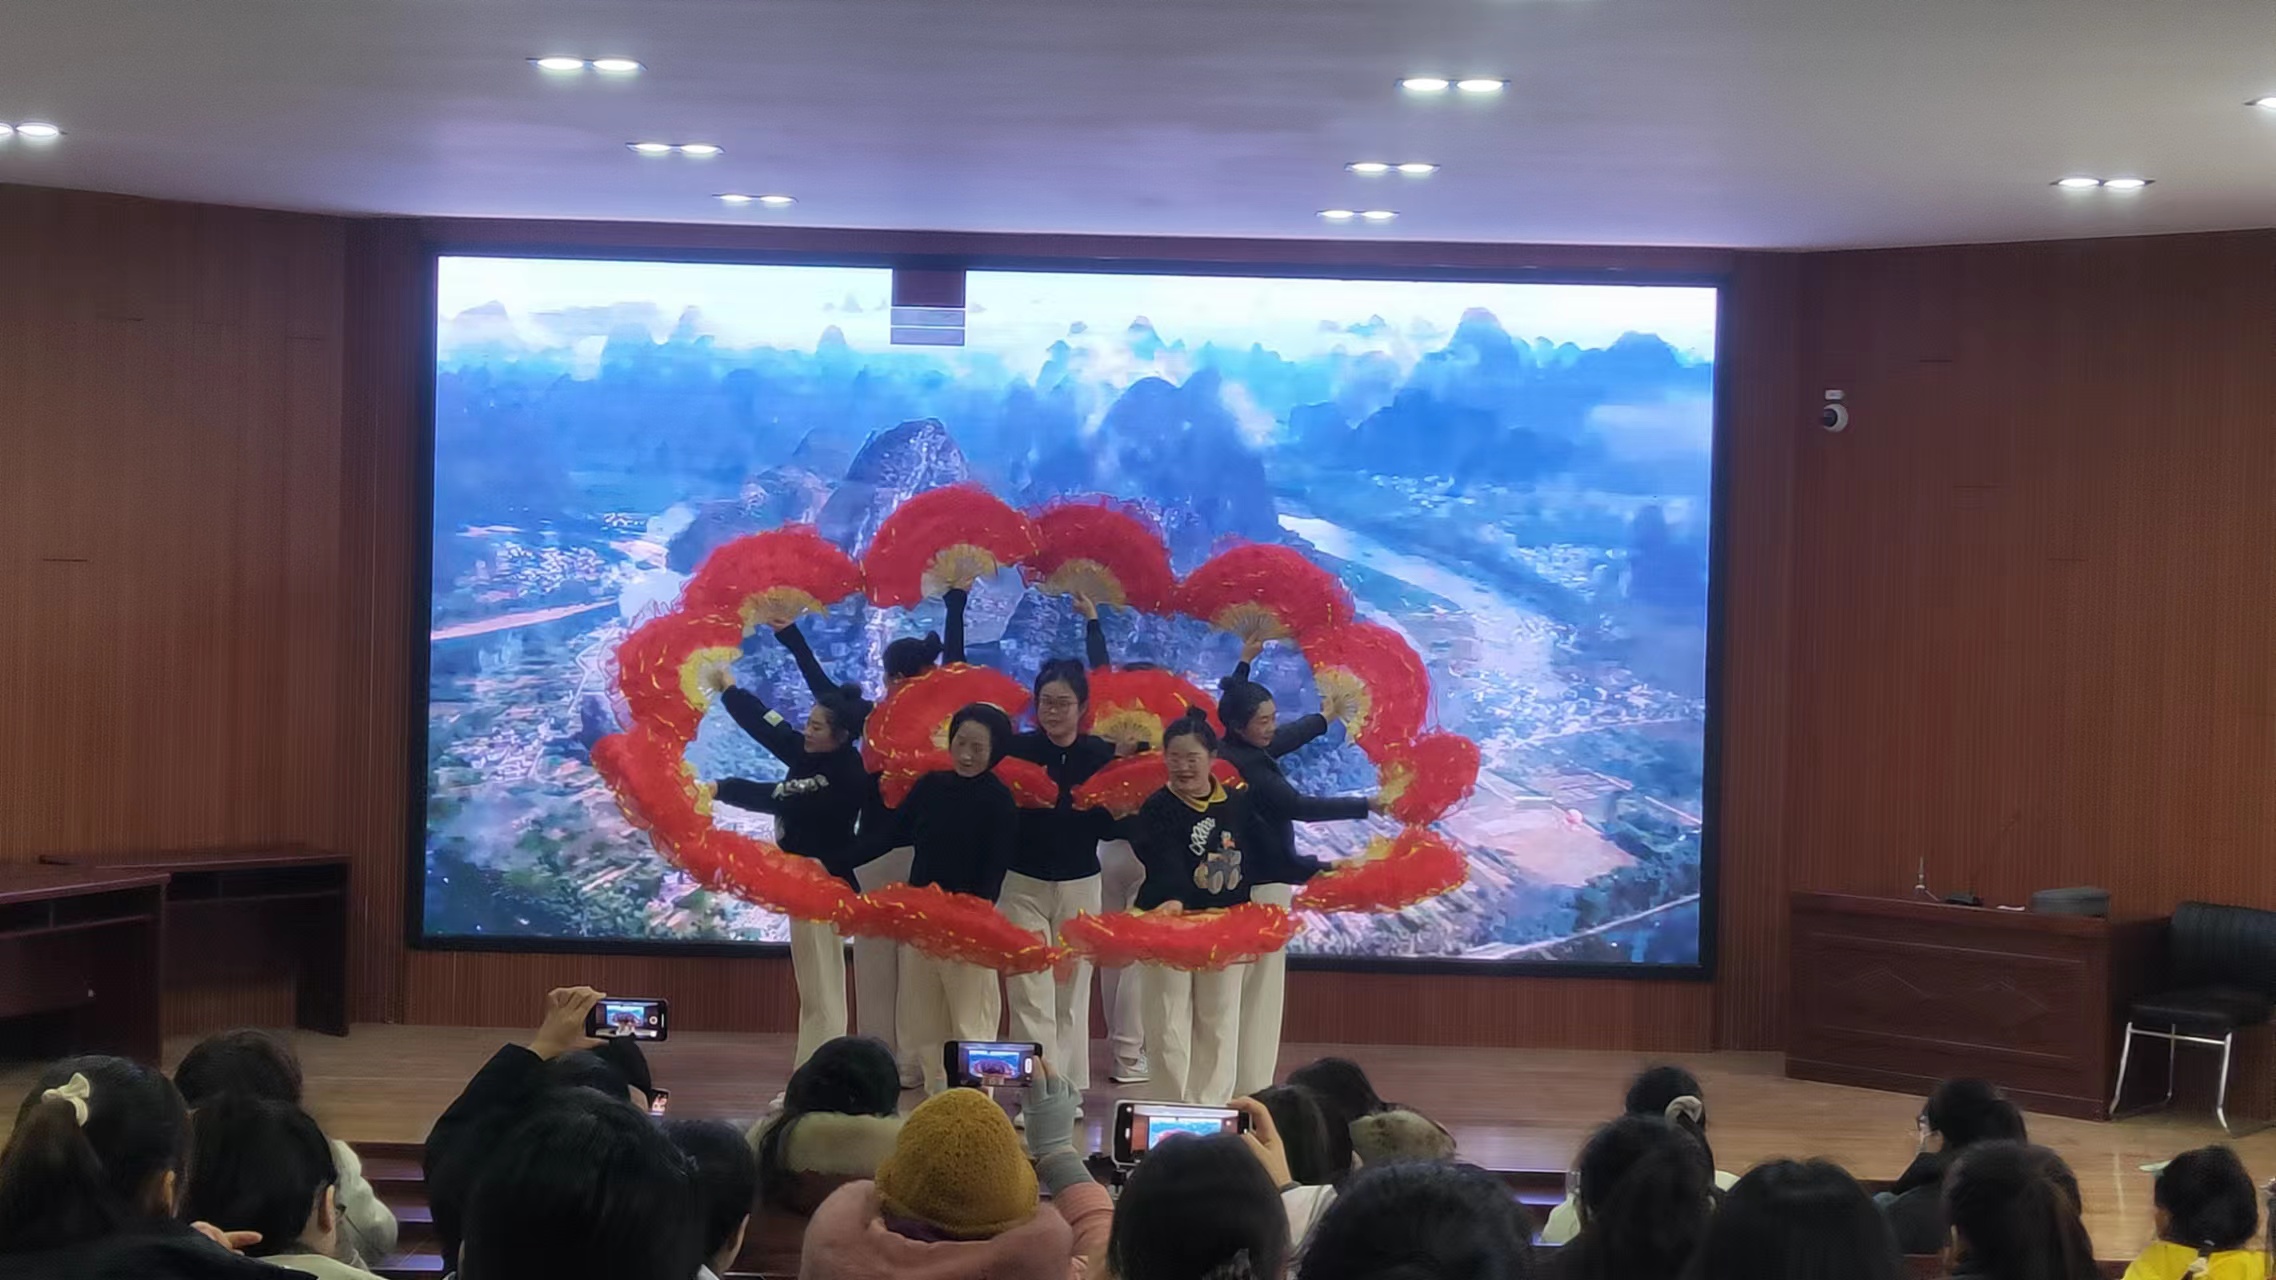 初心向远 未来可期 ——窑湾镇中心小学举行教师元旦汇演活动